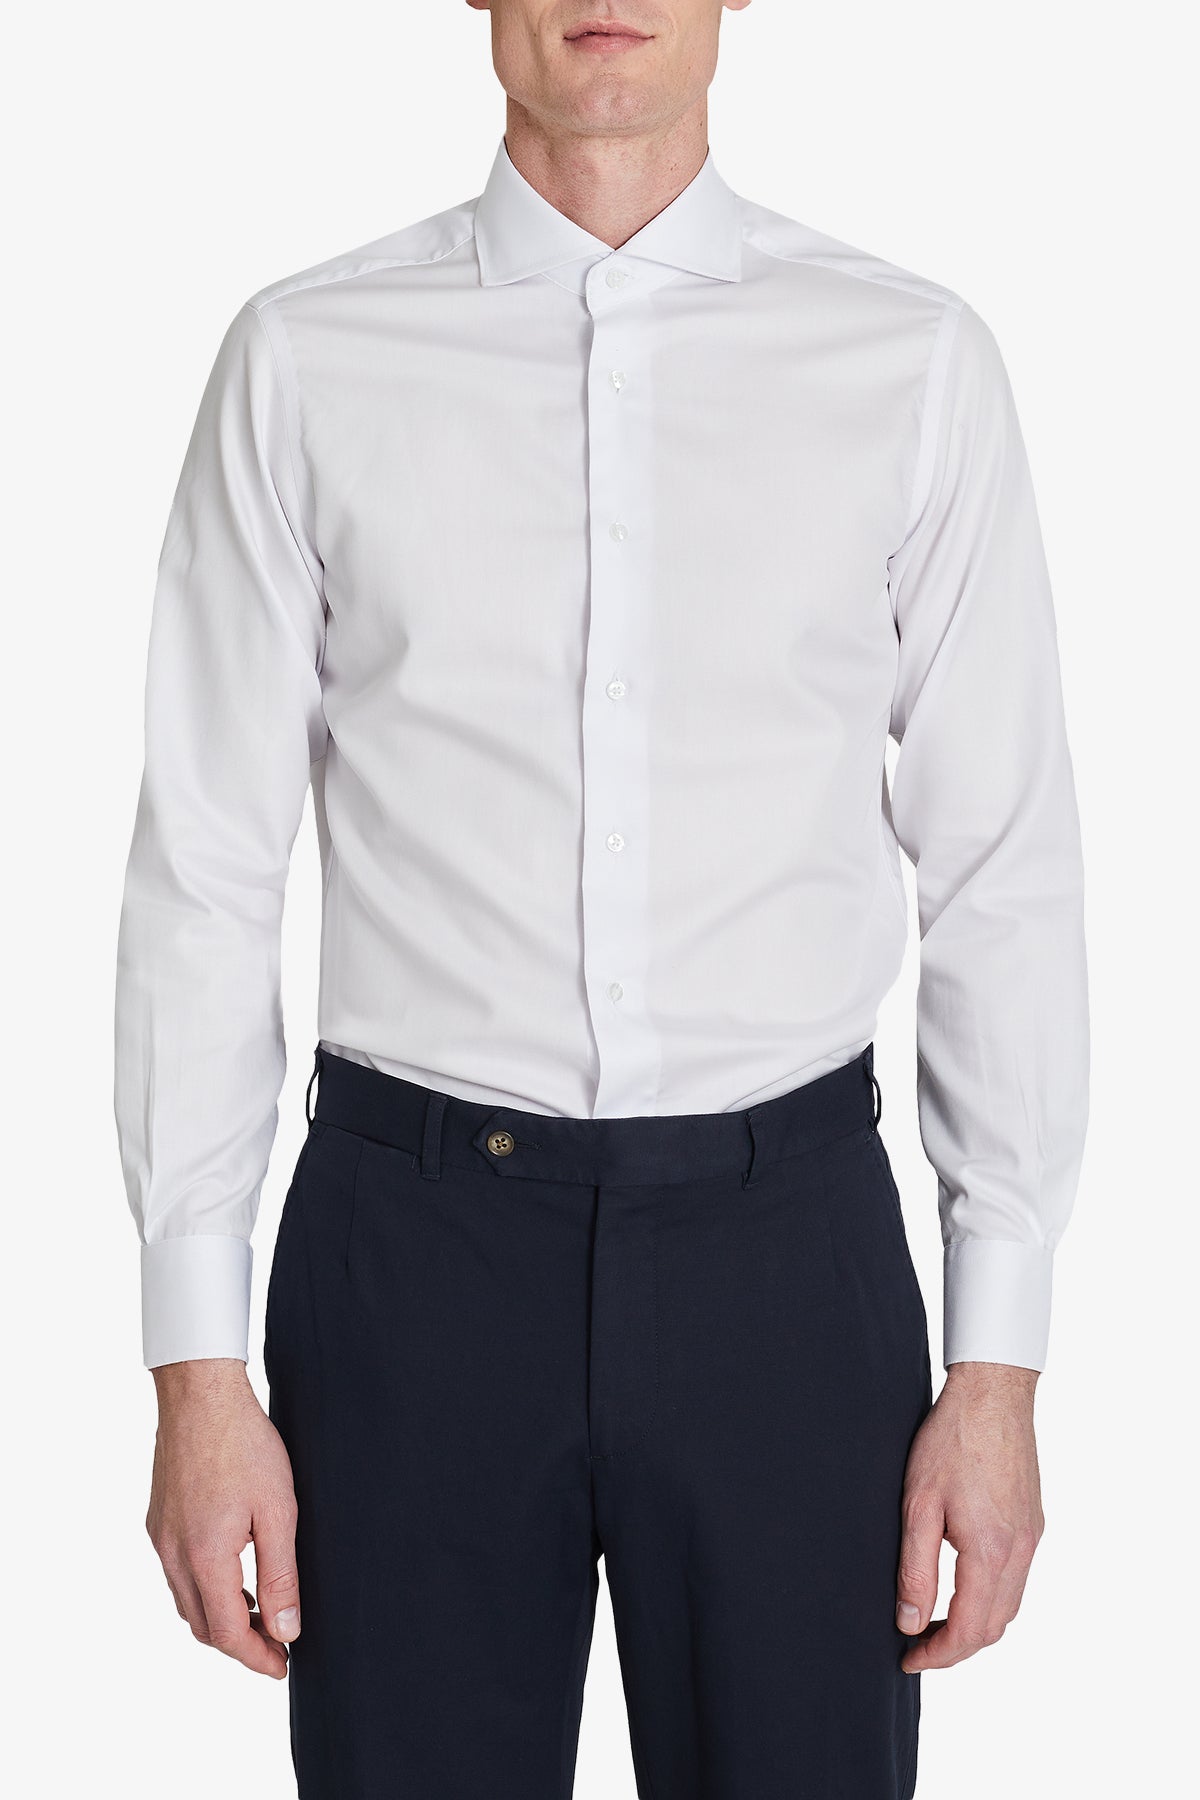 Alton - White Shirt